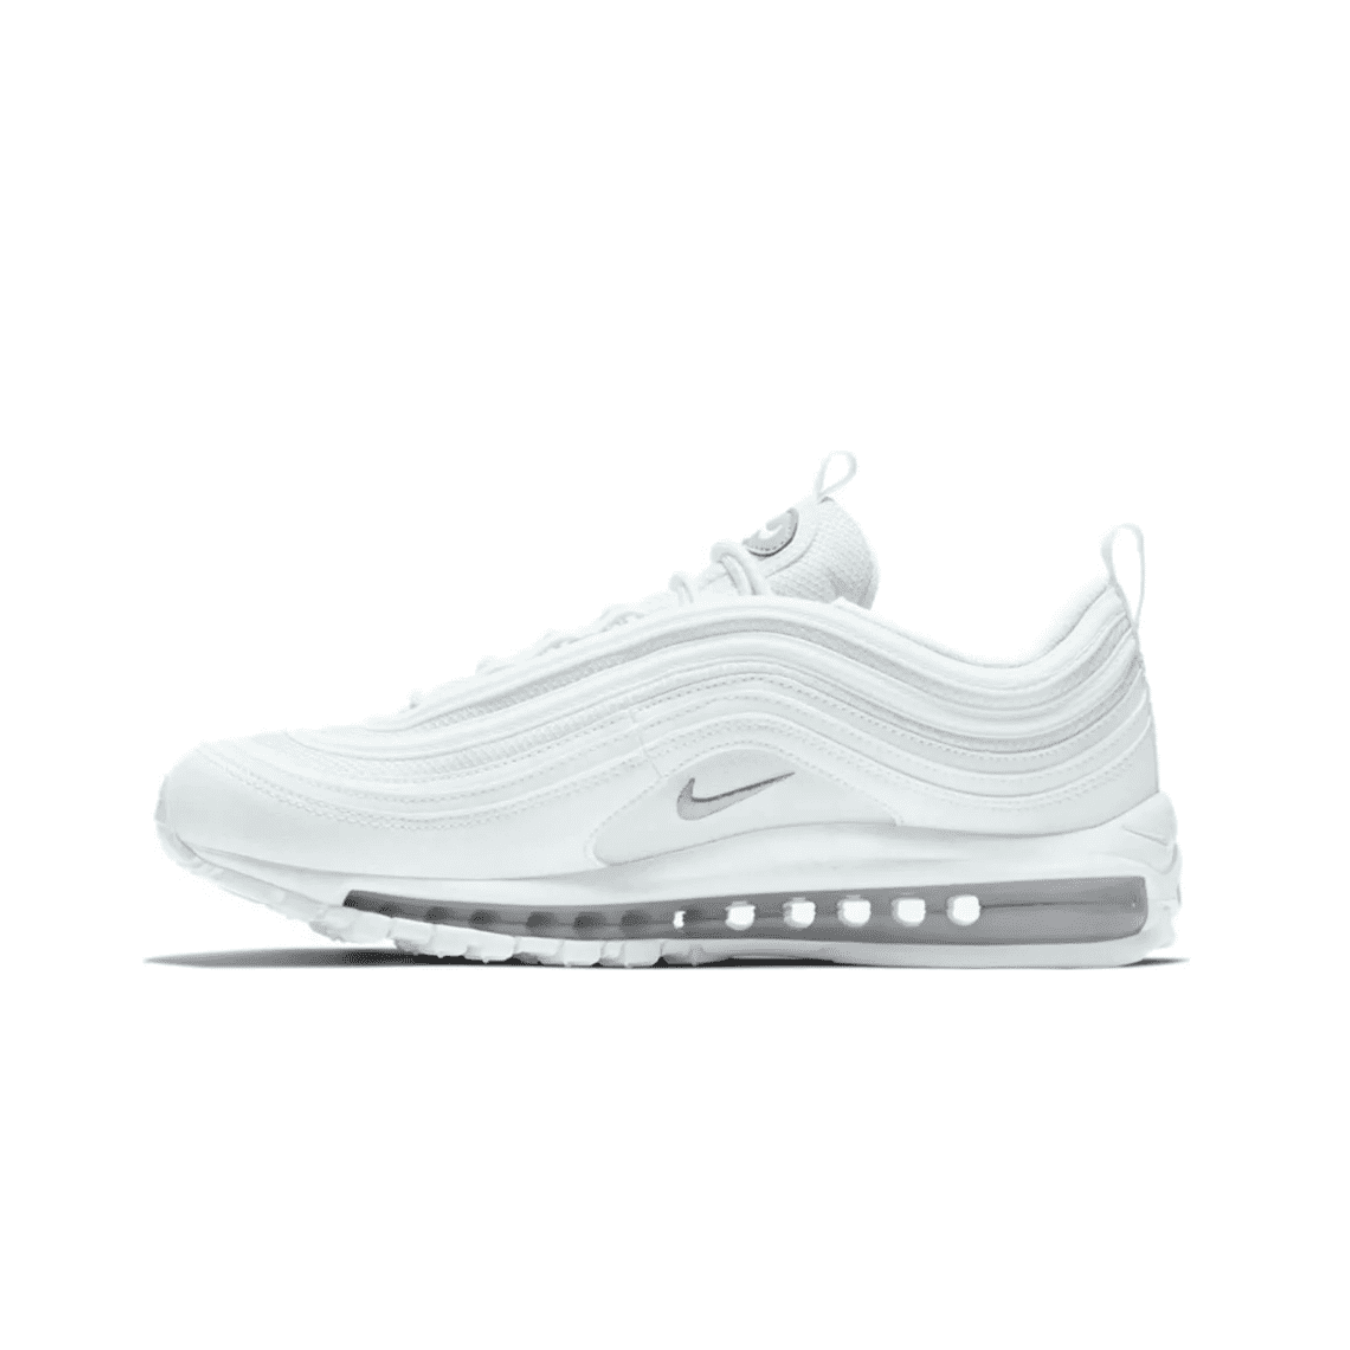 Nike air max 97 "Triple White"